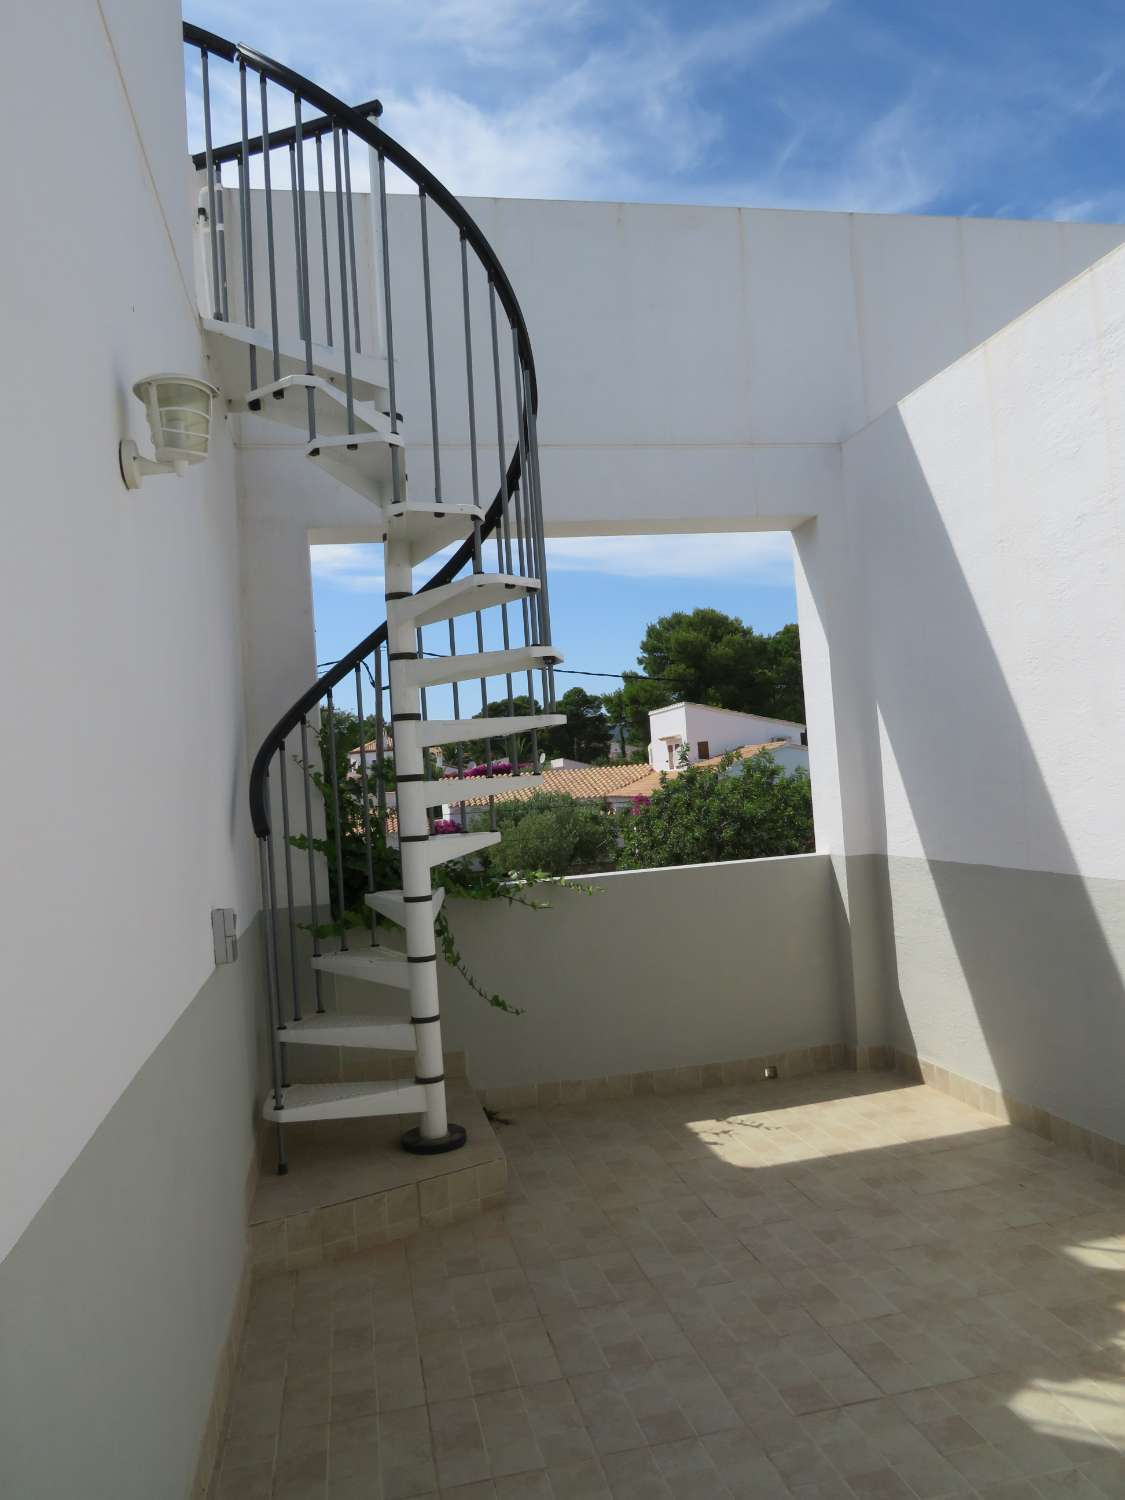 Maison moderne proche de la plage dans la jolie urbanisation de Las Tres Calas avec une piscine privée et barbecue.